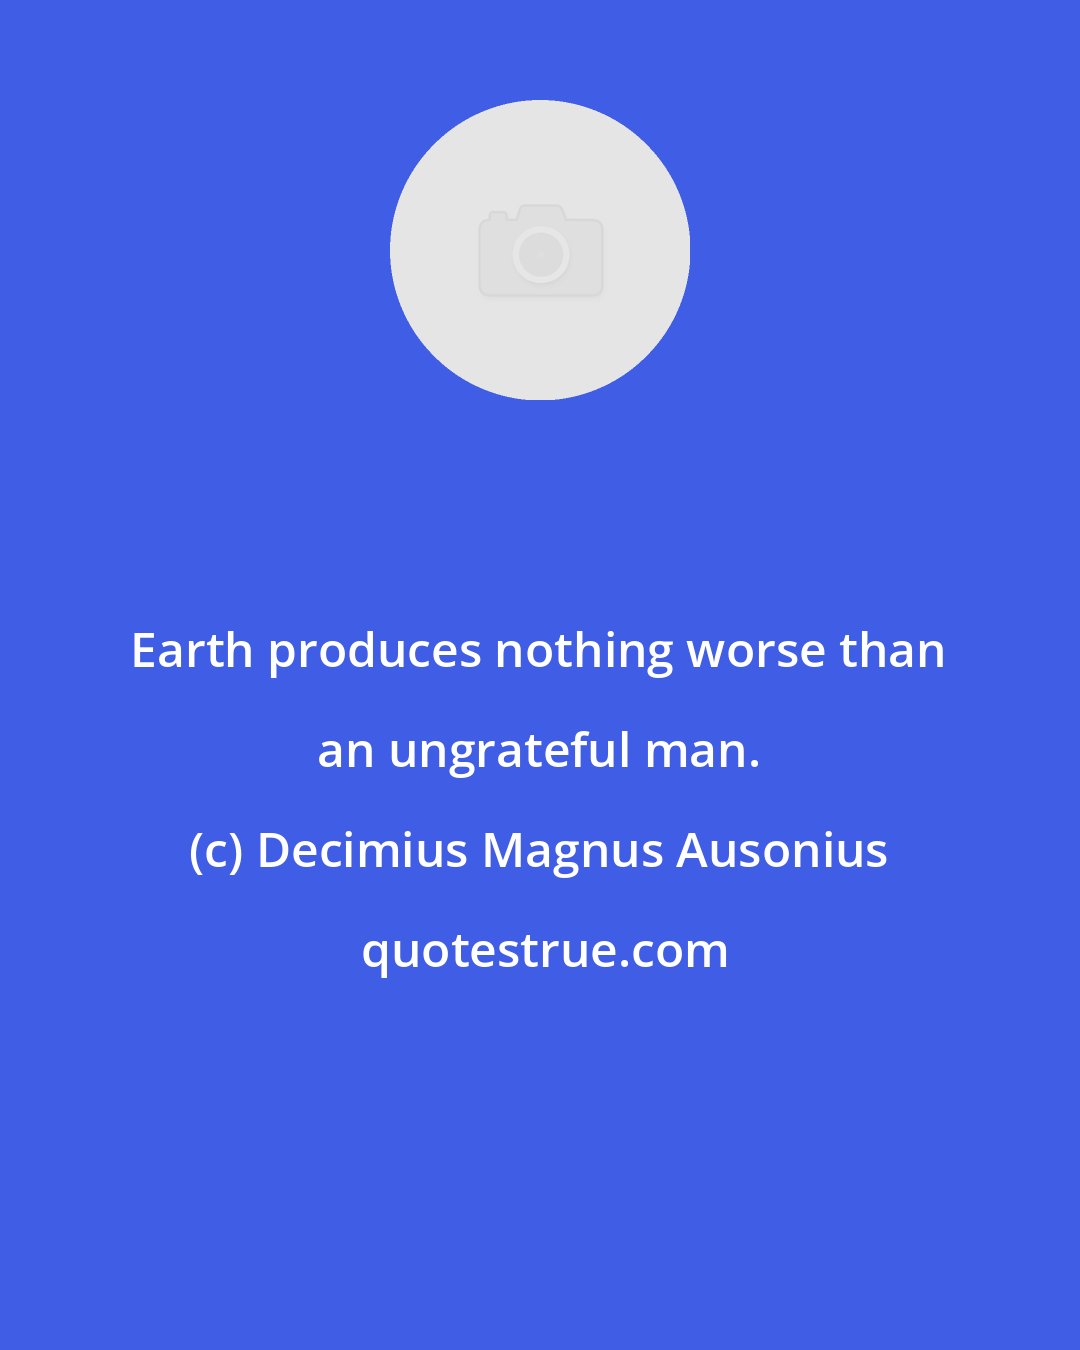 Decimius Magnus Ausonius: Earth produces nothing worse than an ungrateful man.